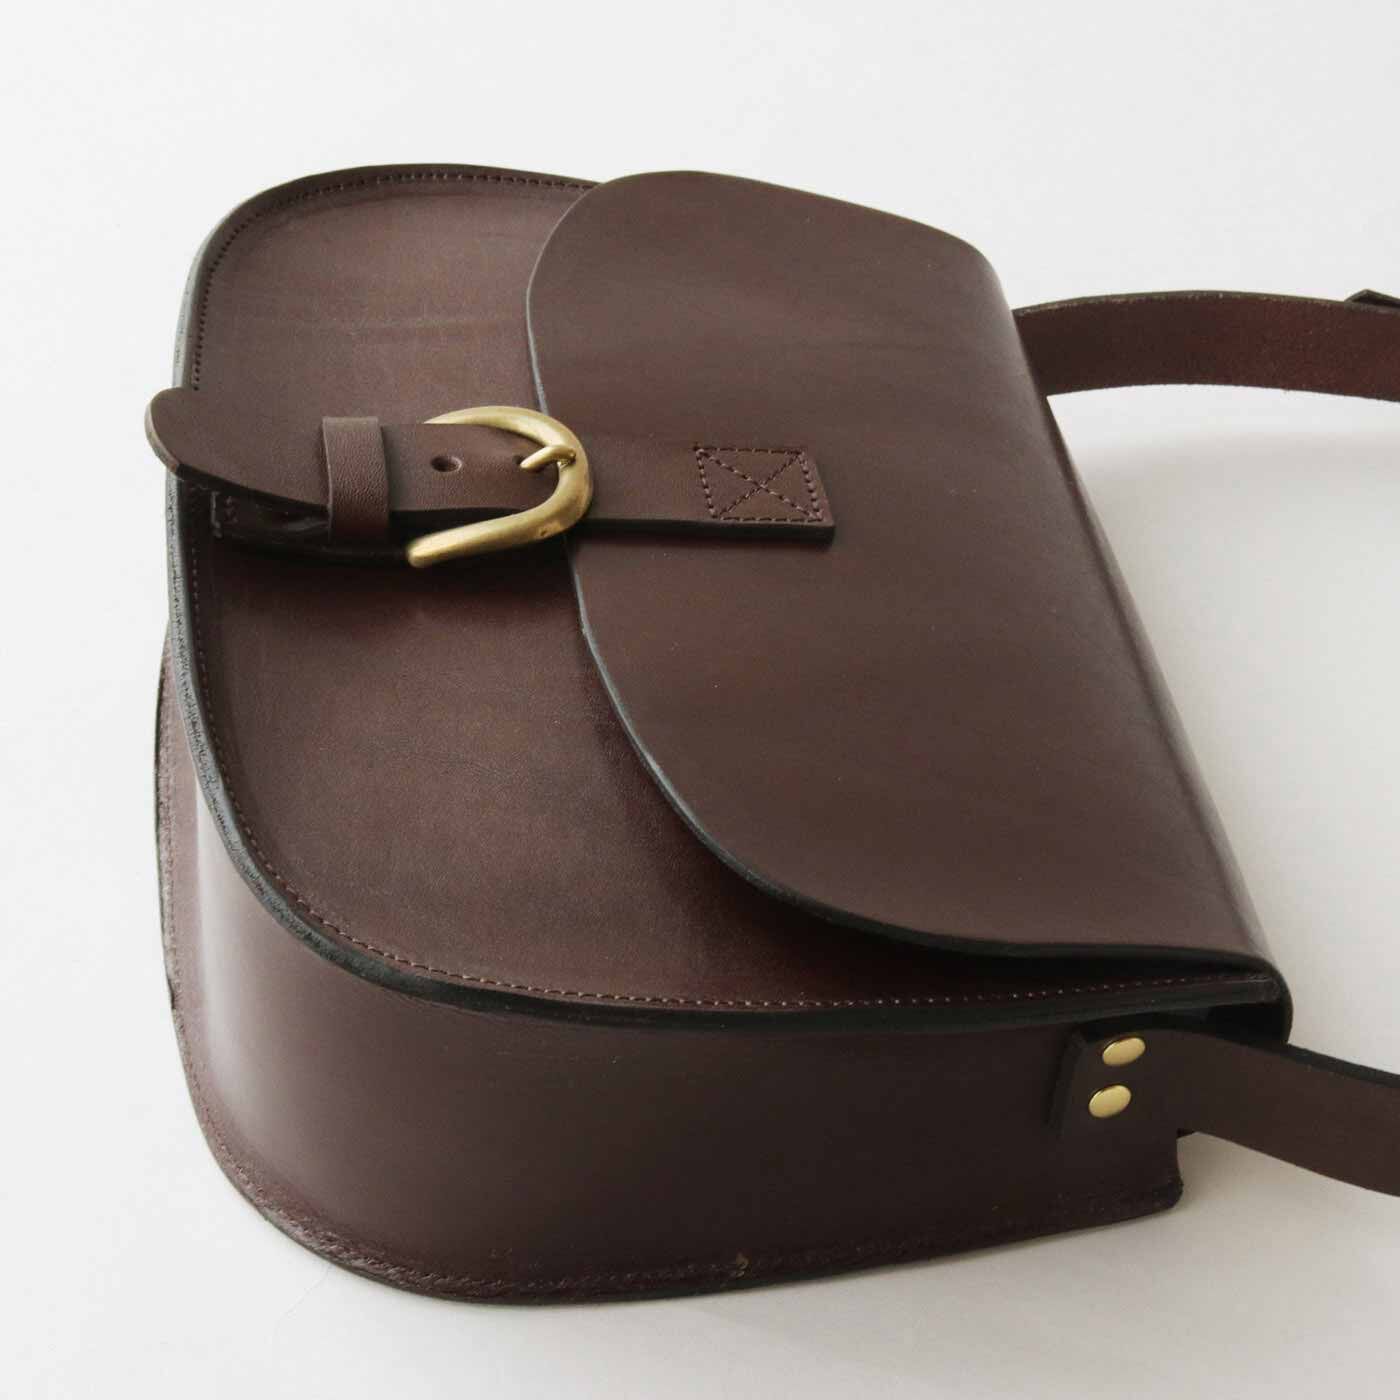 ＆Stories|福岡の鞄作家と作った 職人本革のフォートバッグ〈ウッドブラウン〉[本革　鞄：日本製]|大ぶりの留め金具は飾りで、実際はスナップボタンでスムーズに開閉できます。